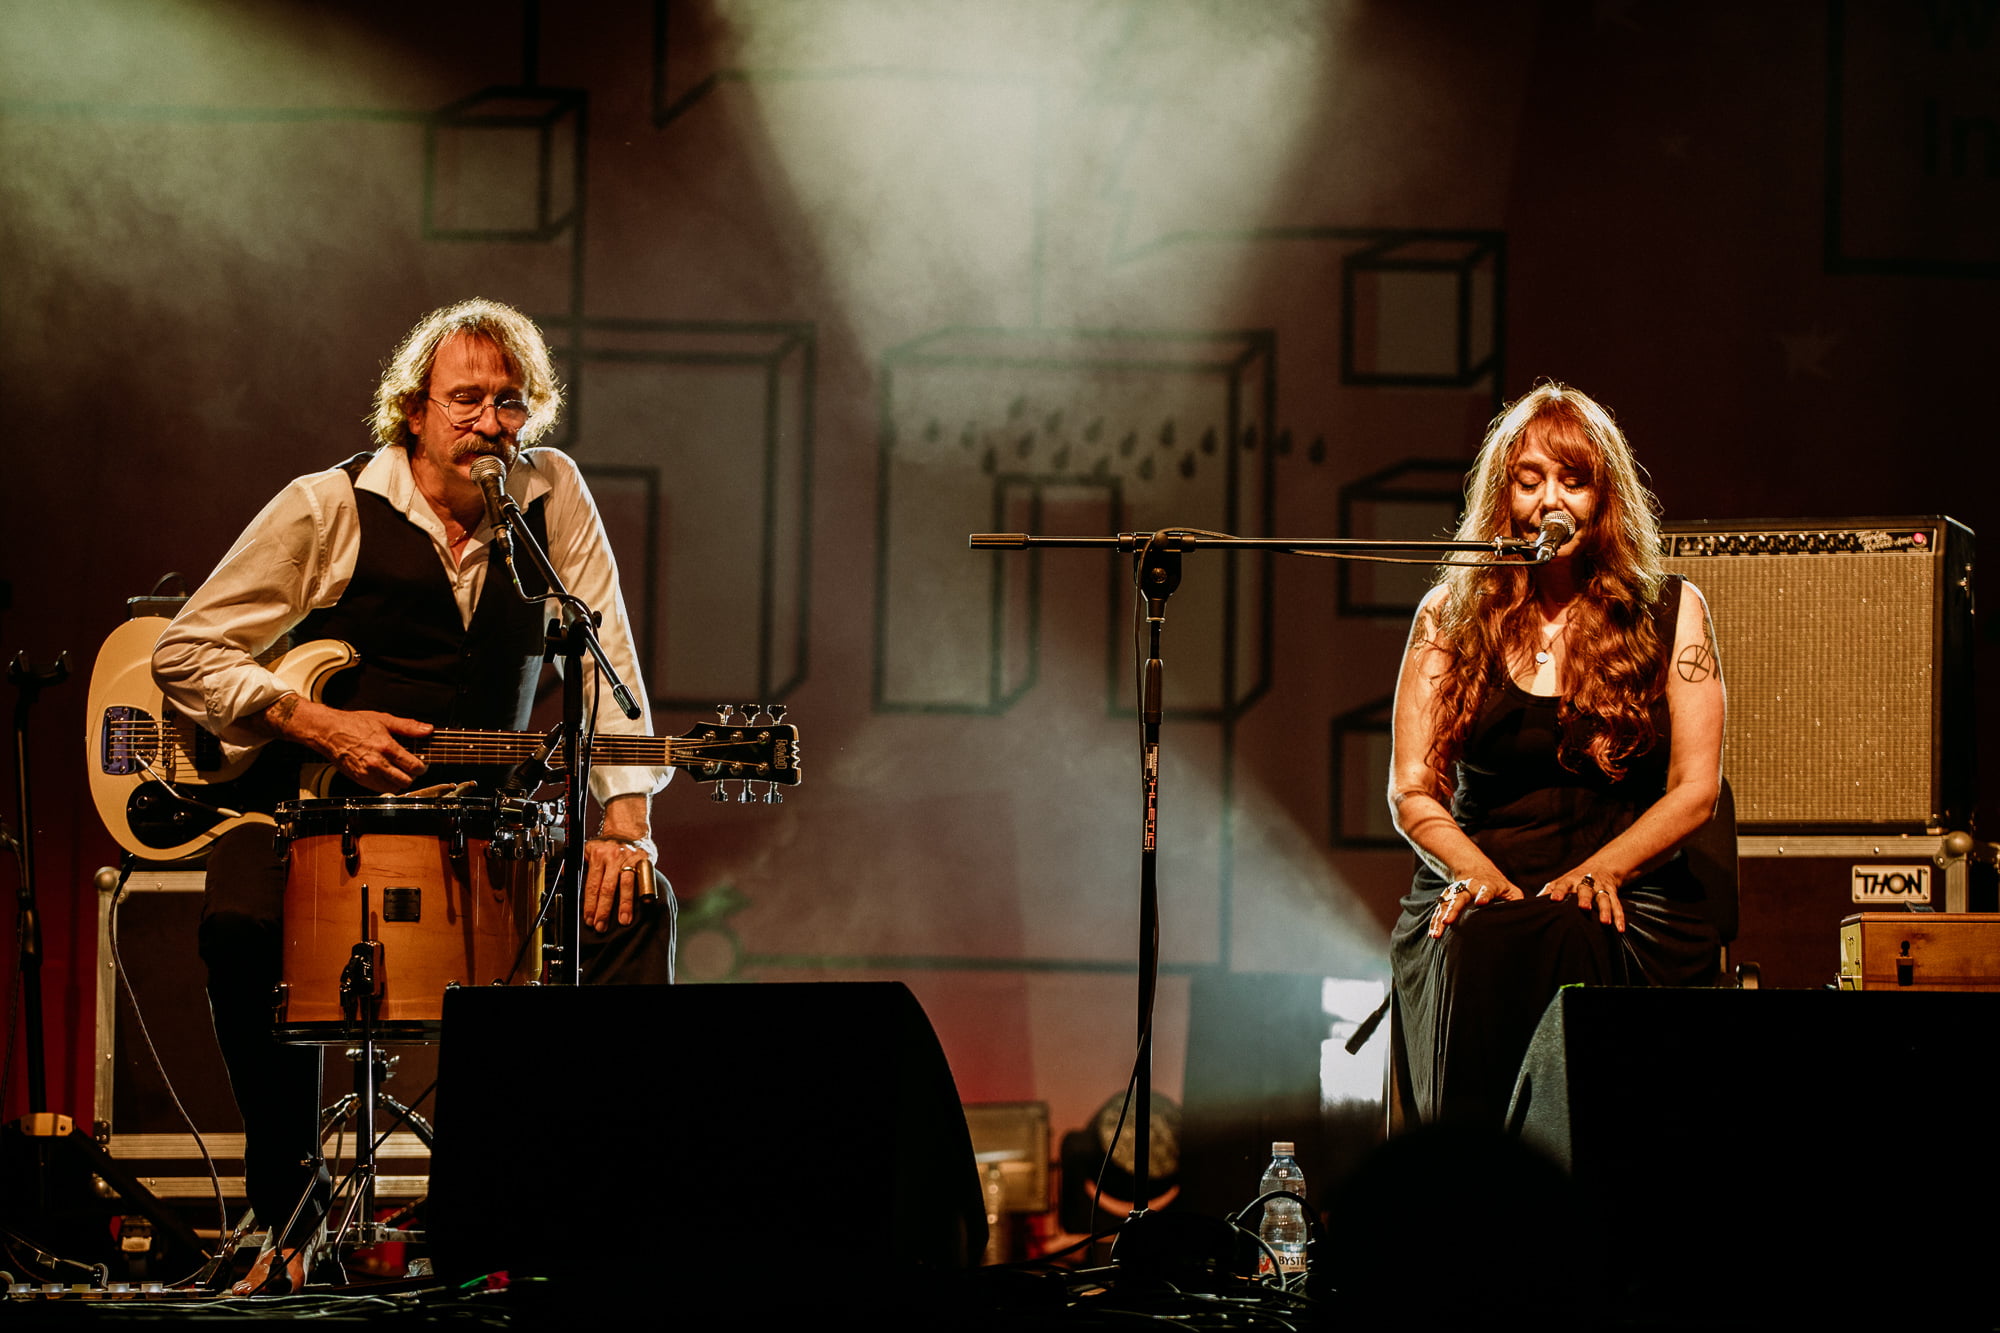 Obraz przedstawia dwoje muzyków, mężczyznę i kobietę, śpiewających do mikrofonu na scenie podczas koncertu.